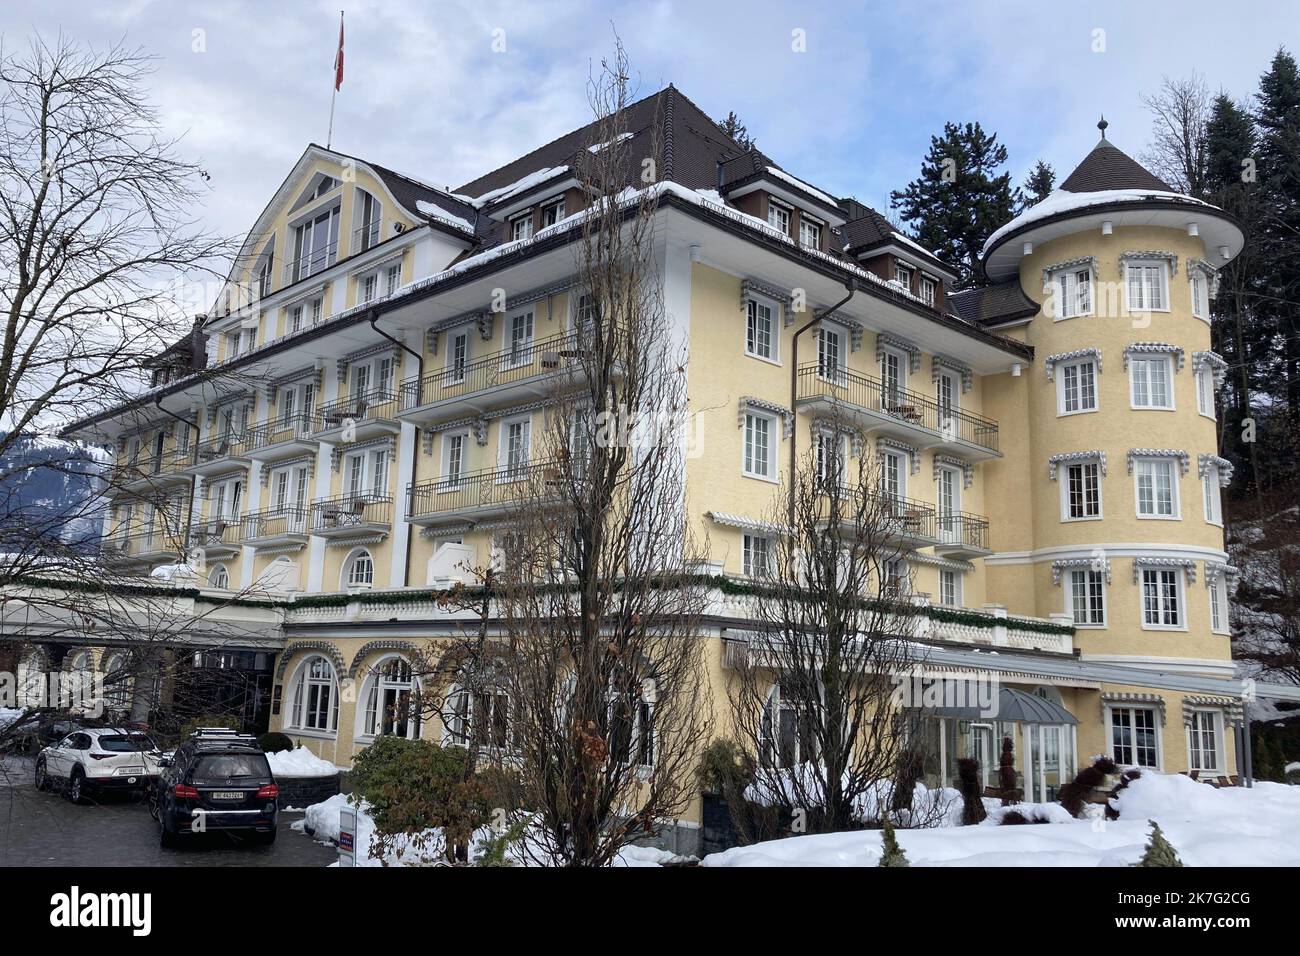 ©Francois Glories/MAXPPP - das 4* Grand Bellevue Hotel and Spa im berühmten Schweizer Alpenresort Gstaad. Viele Berühmtheiten übernachten hier schon seit Jahren (einschließlich der Königlichen Hoheit Caroline von Hannover). Schweiz Gstaad, Dezember 27 2021. Stockfoto